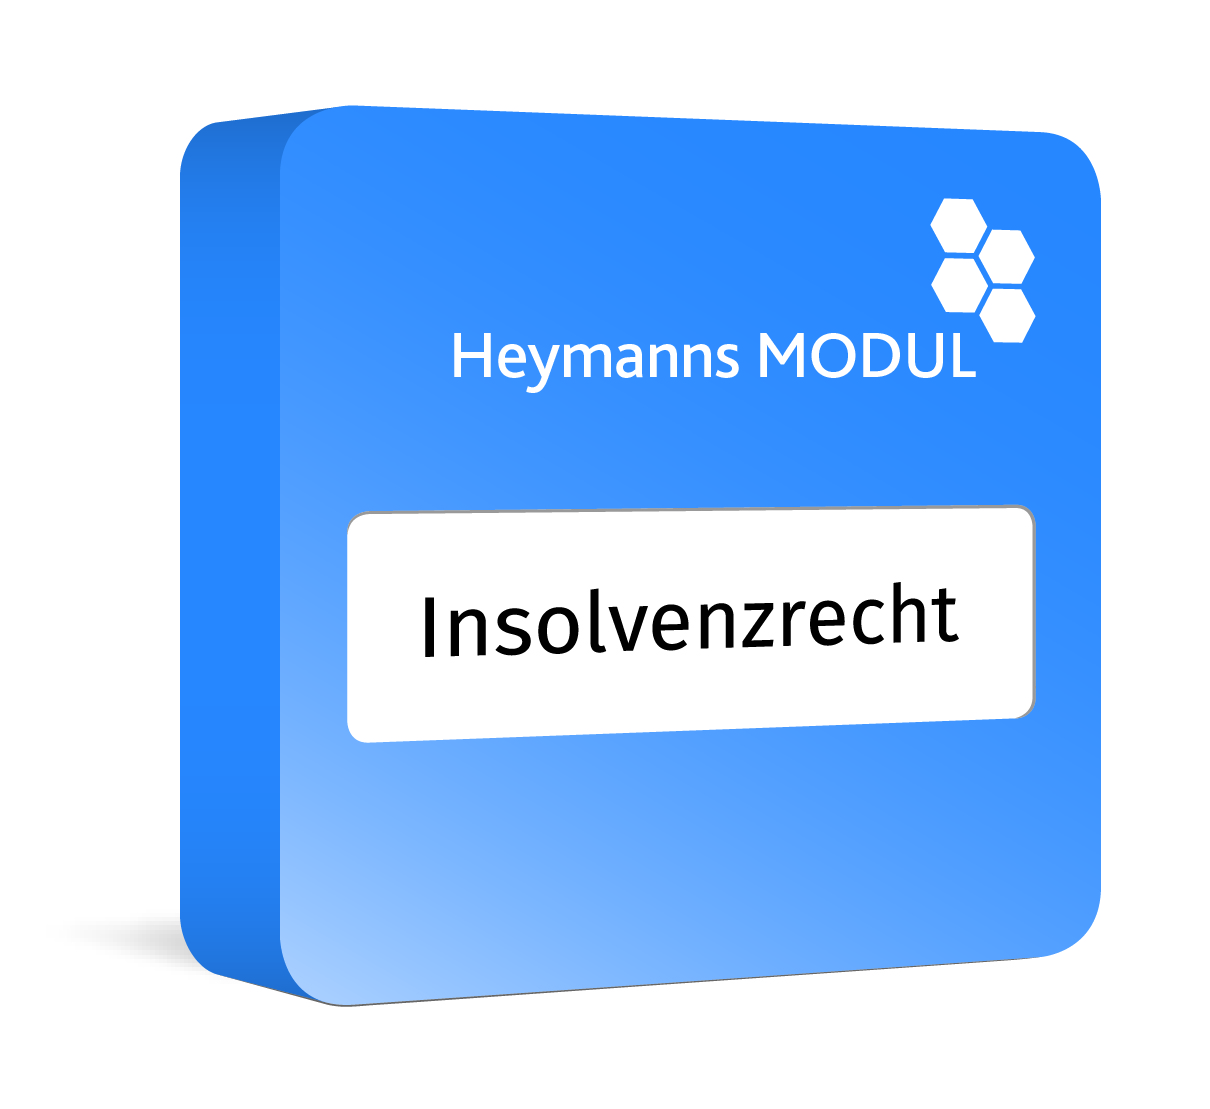 Heymanns Insolvenzrecht Modul